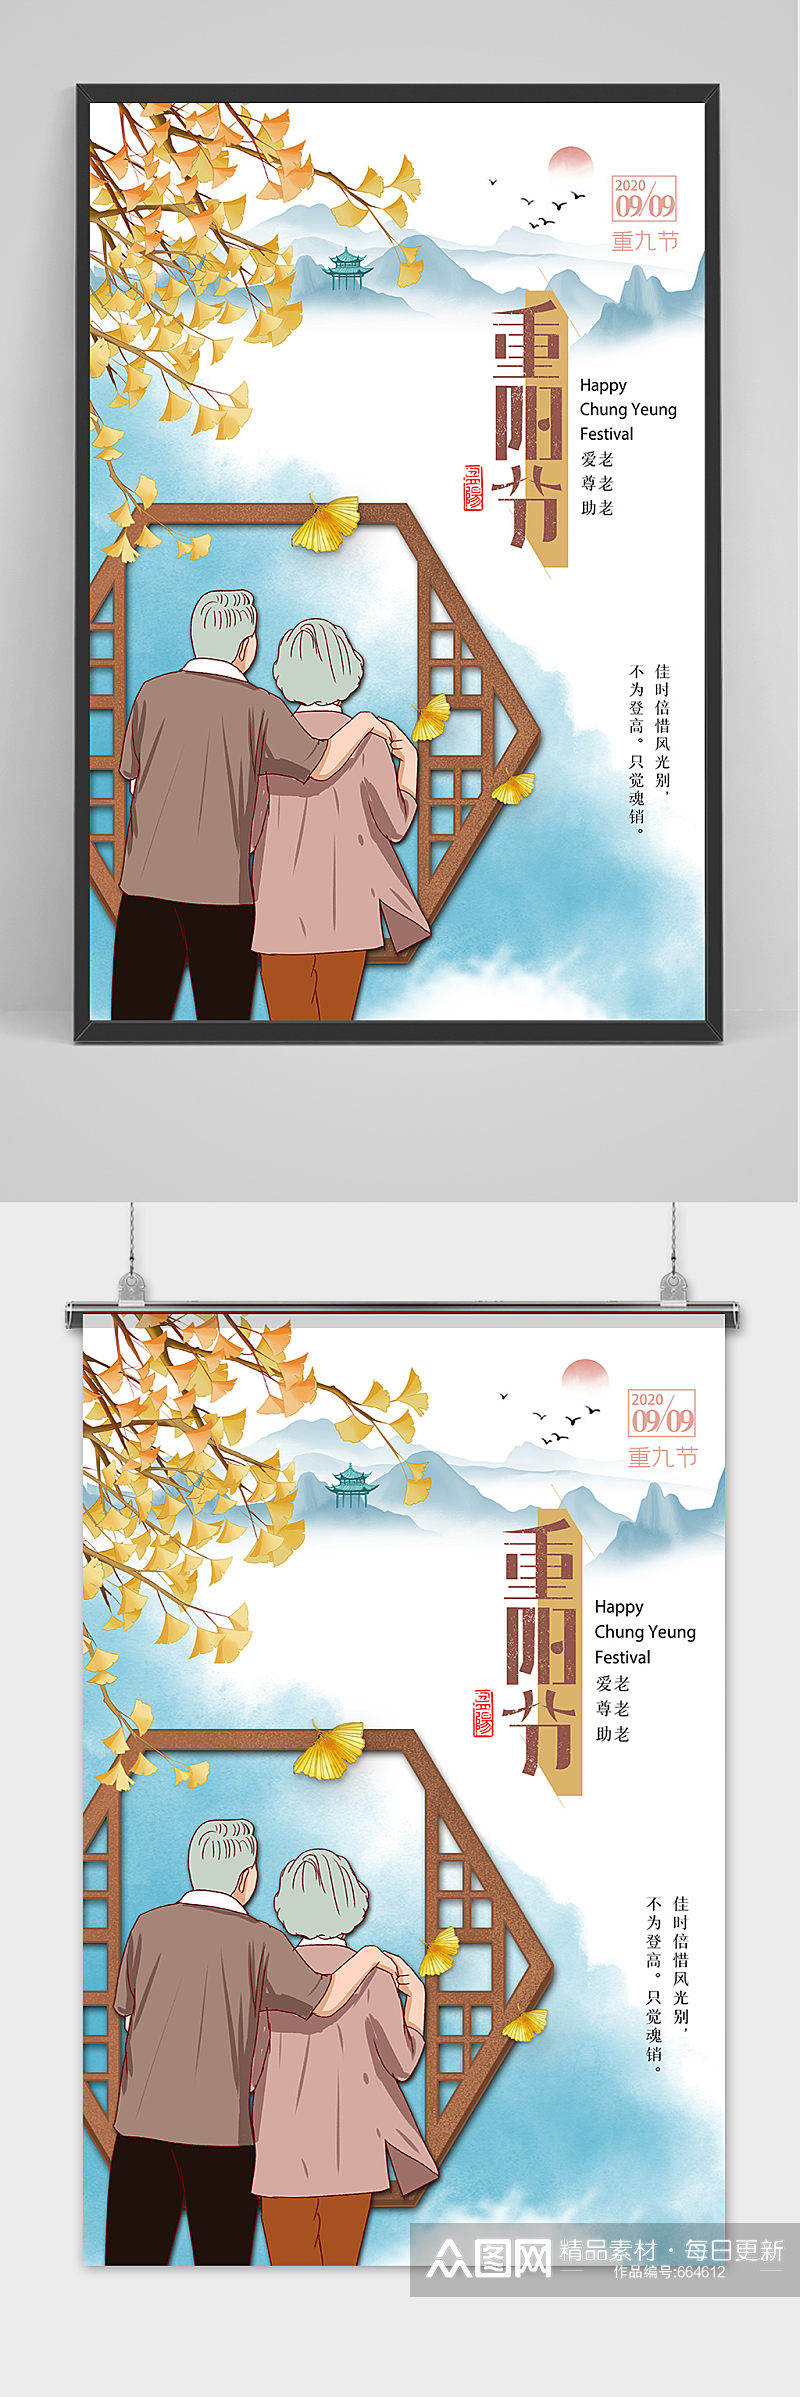 中国传统节日重阳节海报设计素材